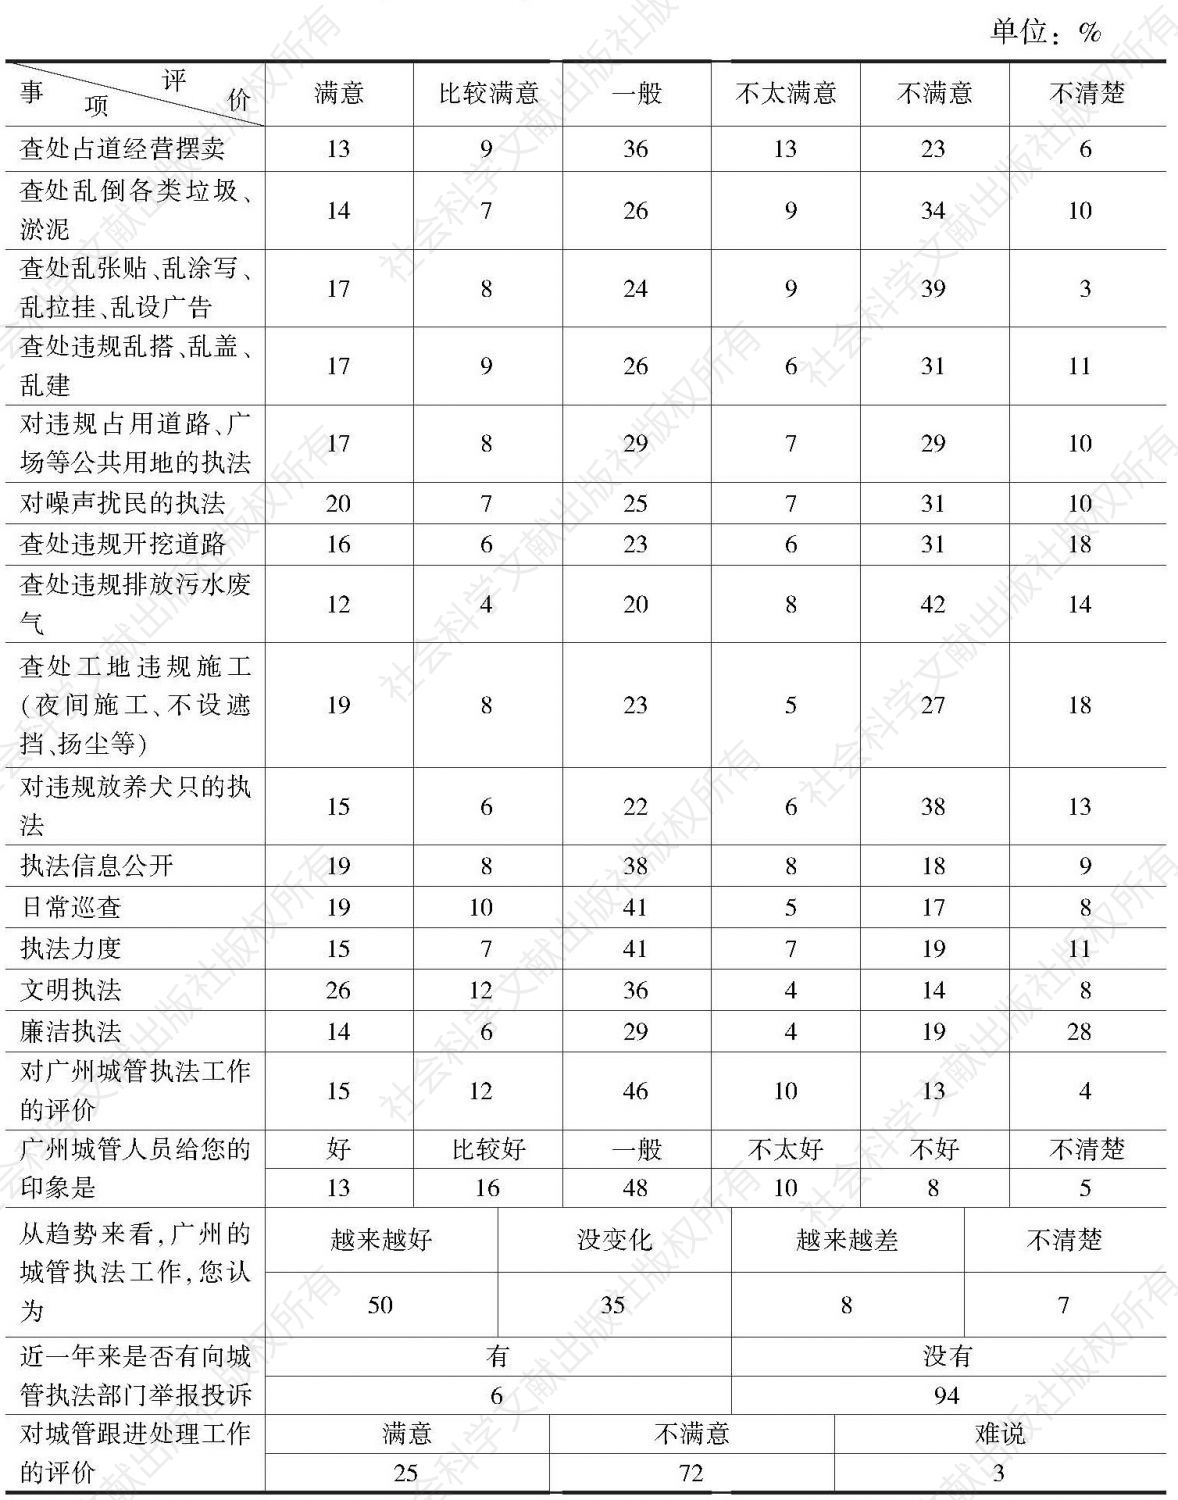 “城管执法工作广州市民评价”民调数据